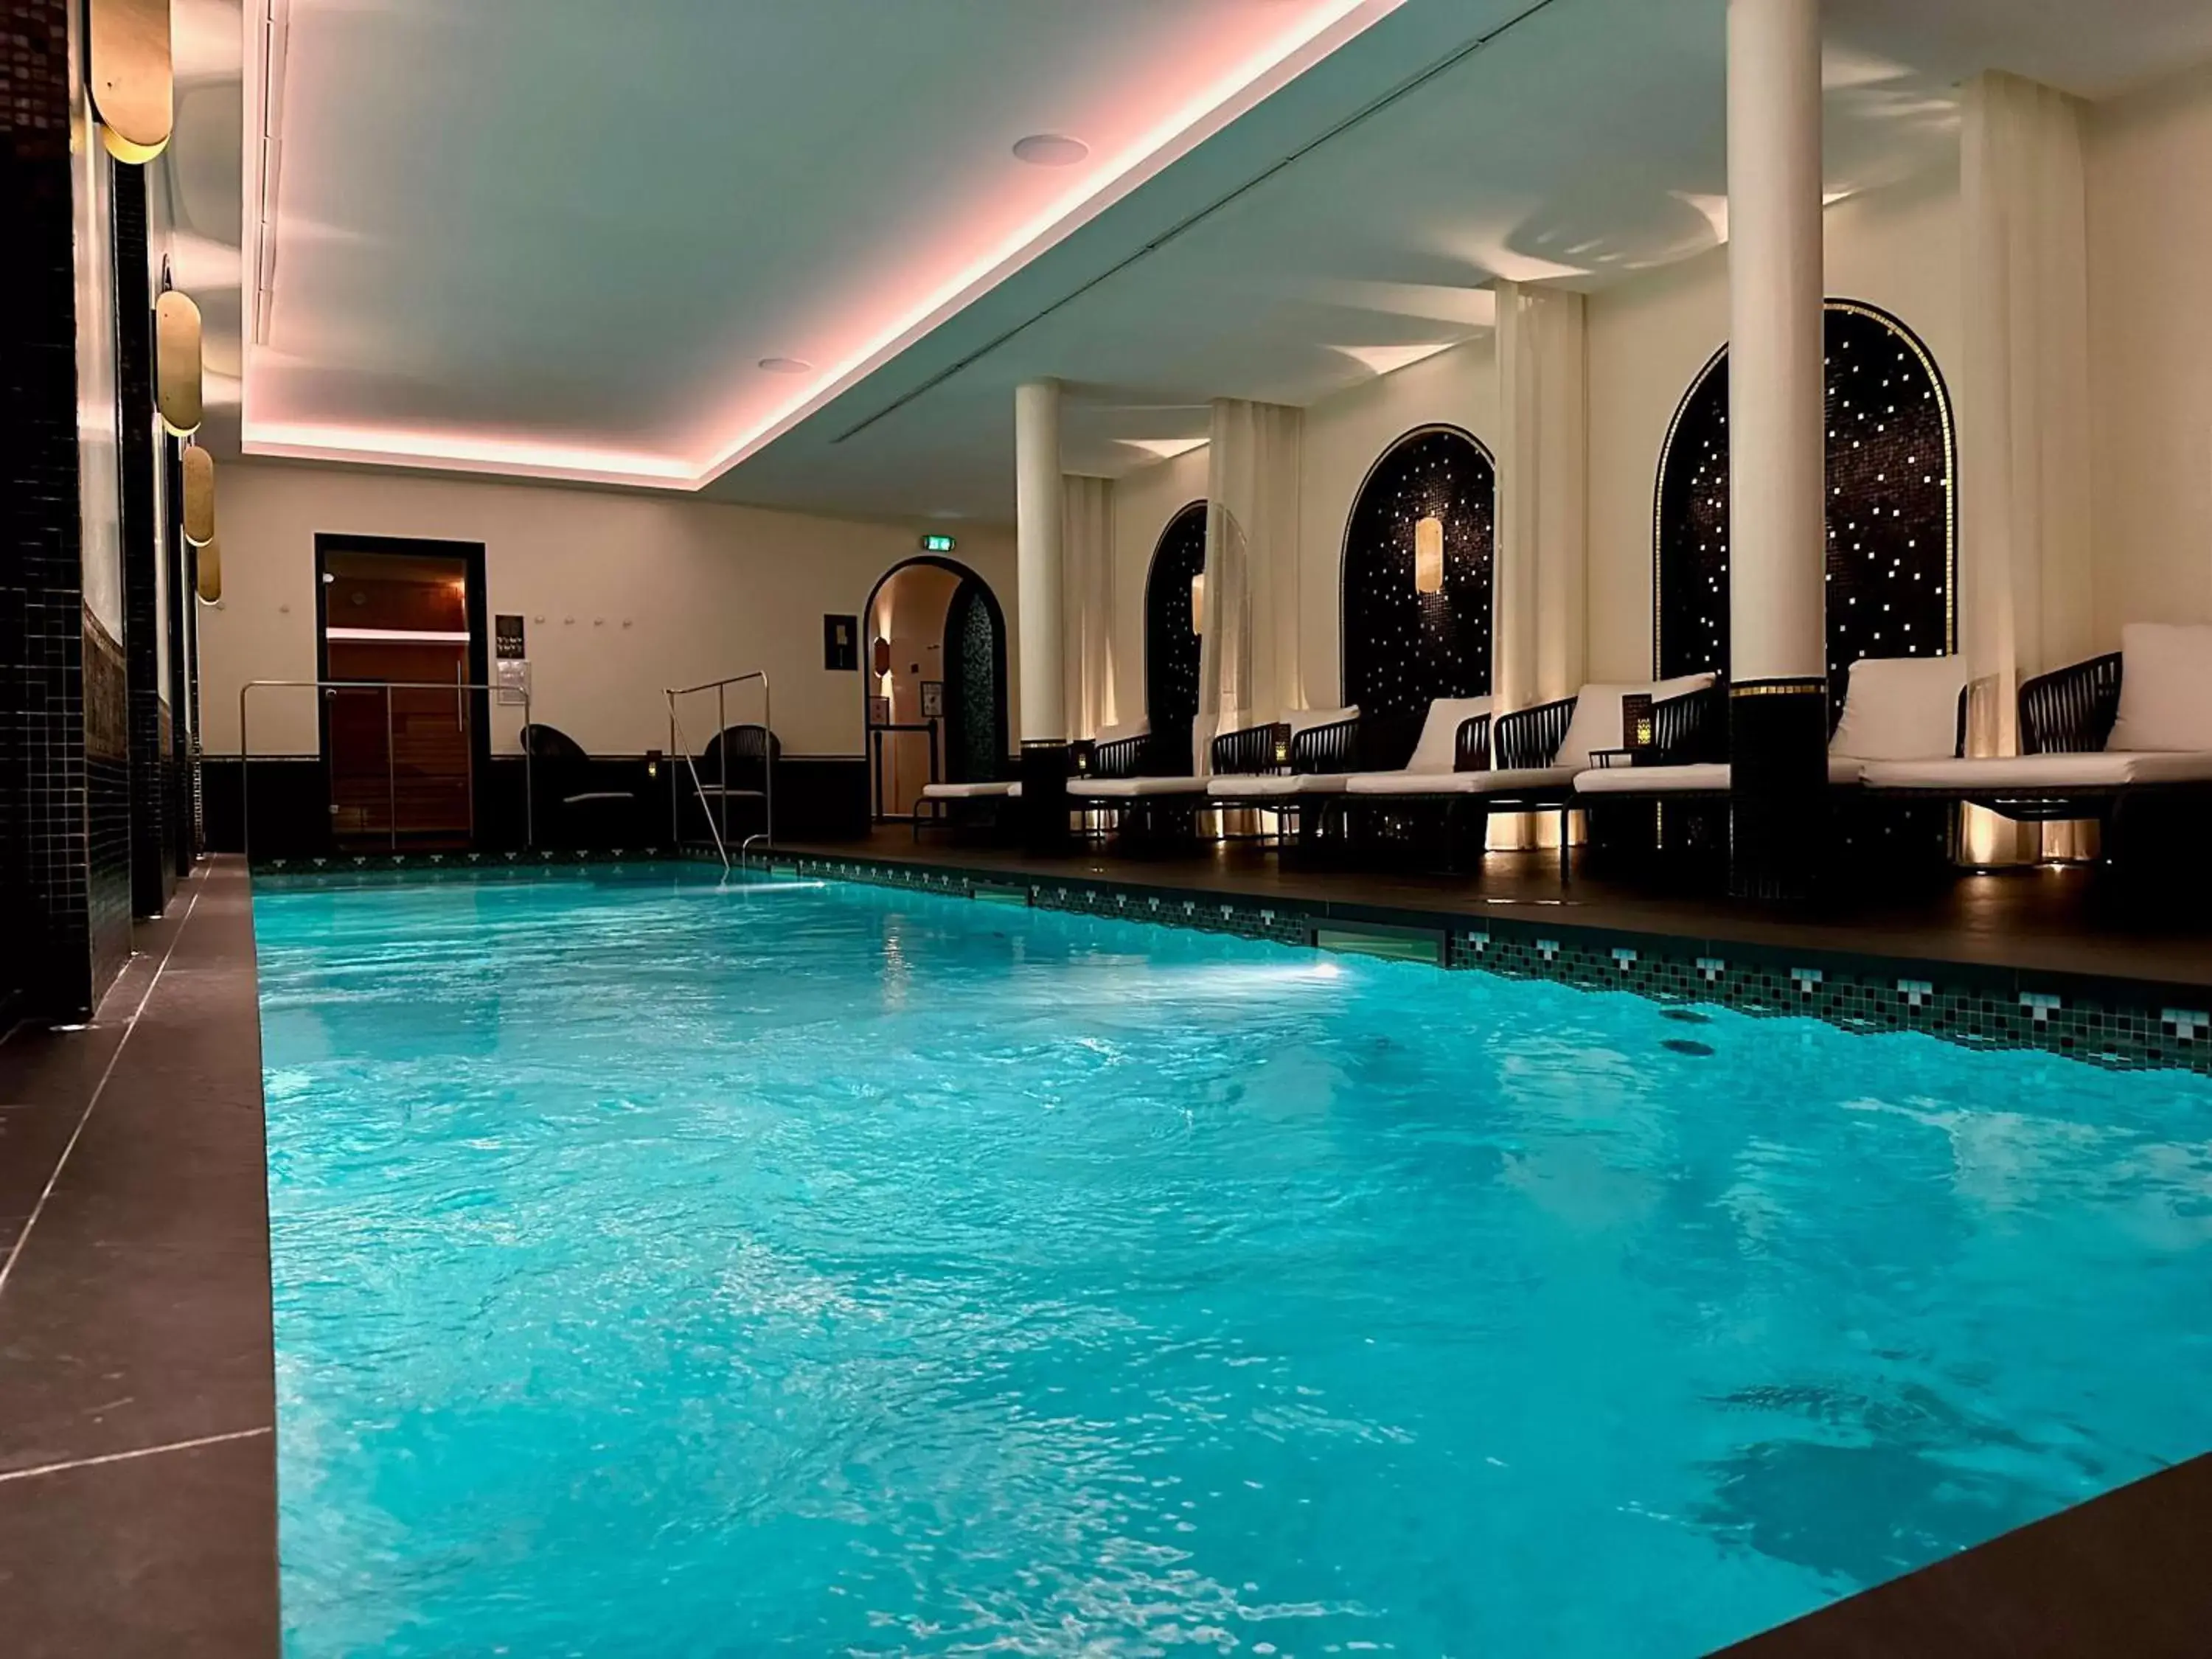 Pool view, Swimming Pool in Best Western Plus Crystal, Hotel & Spa